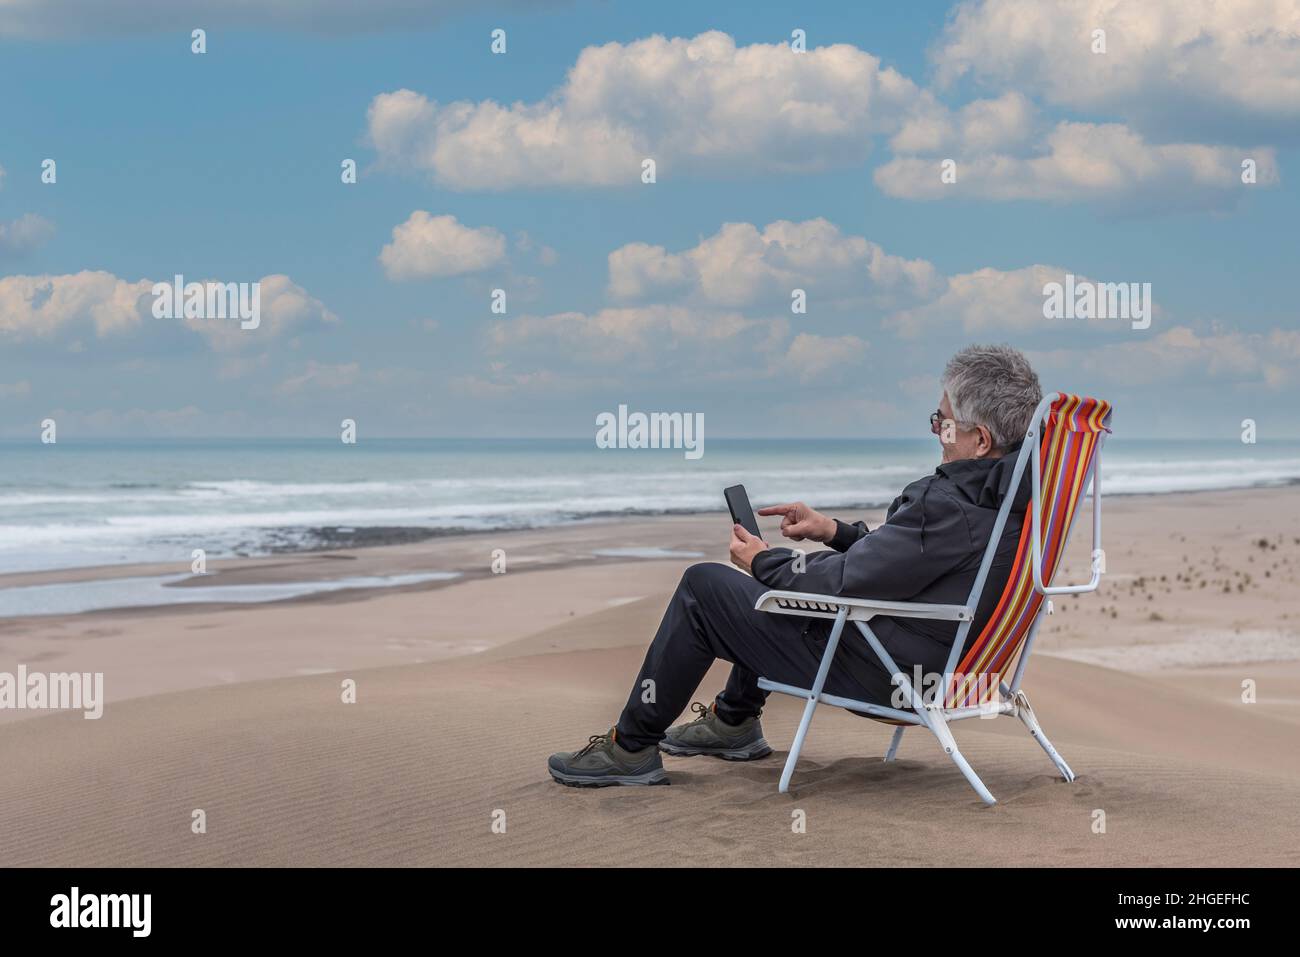 Homme adulte assis sur une chaise de plage au-dessus d'un medano en bord de mer tapant sur un smartphone.Photo horizontale Banque D'Images